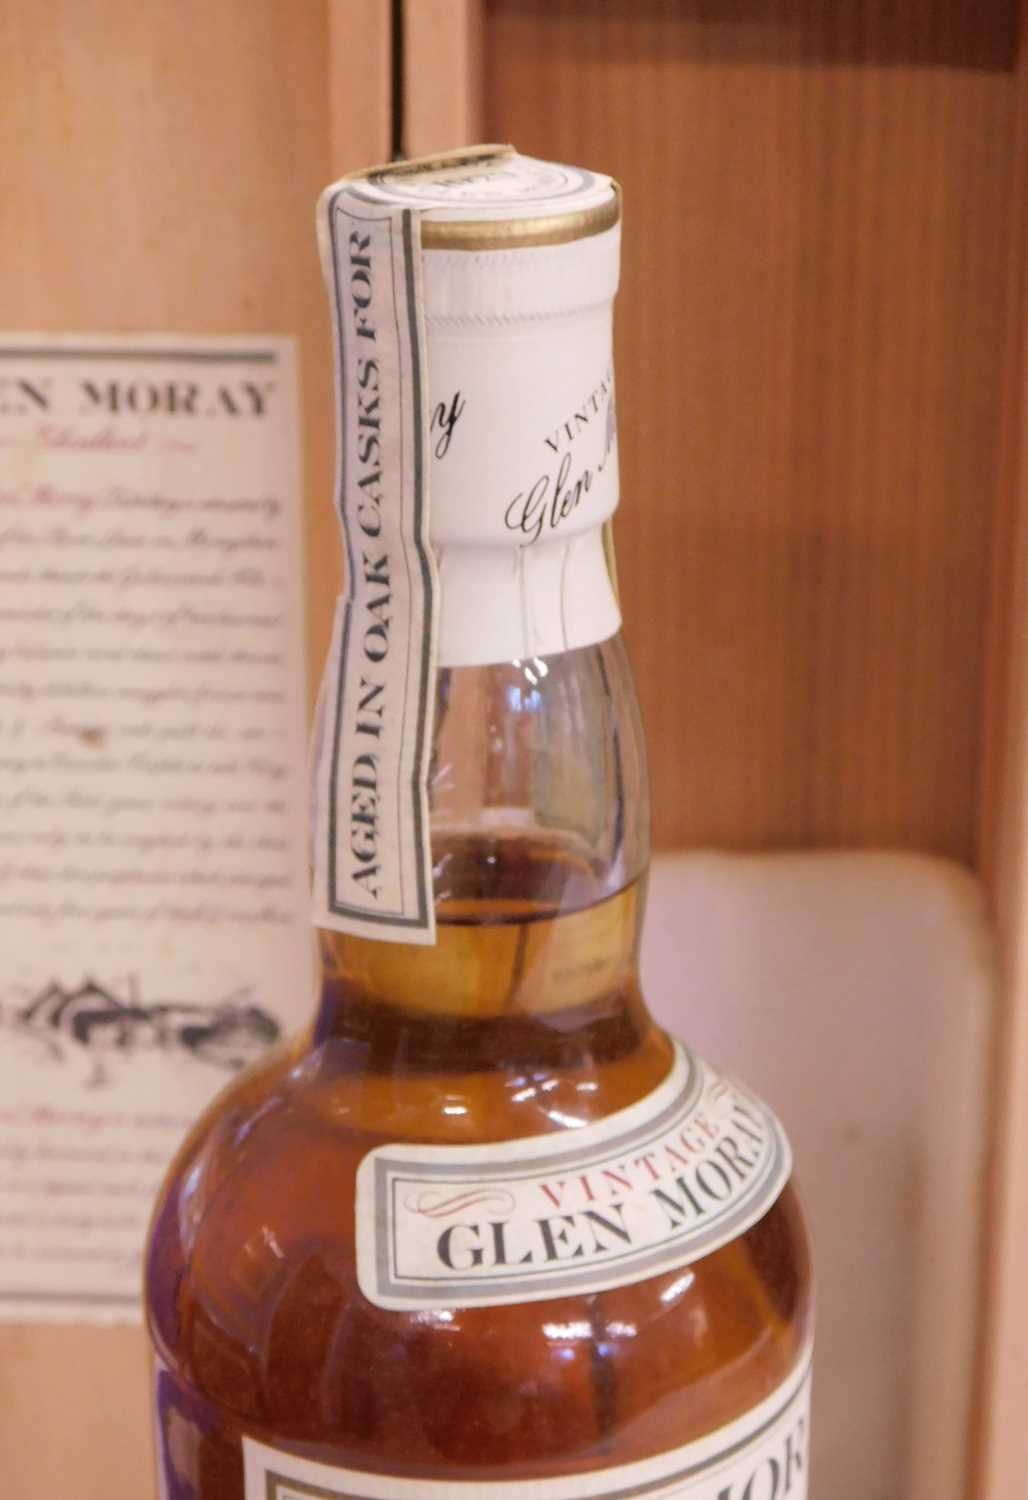 Glen Moray Glenlivet Vintage 1973 Aingle Highland Malt Whisky, 75cl, in original wooden presentation - Image 7 of 10